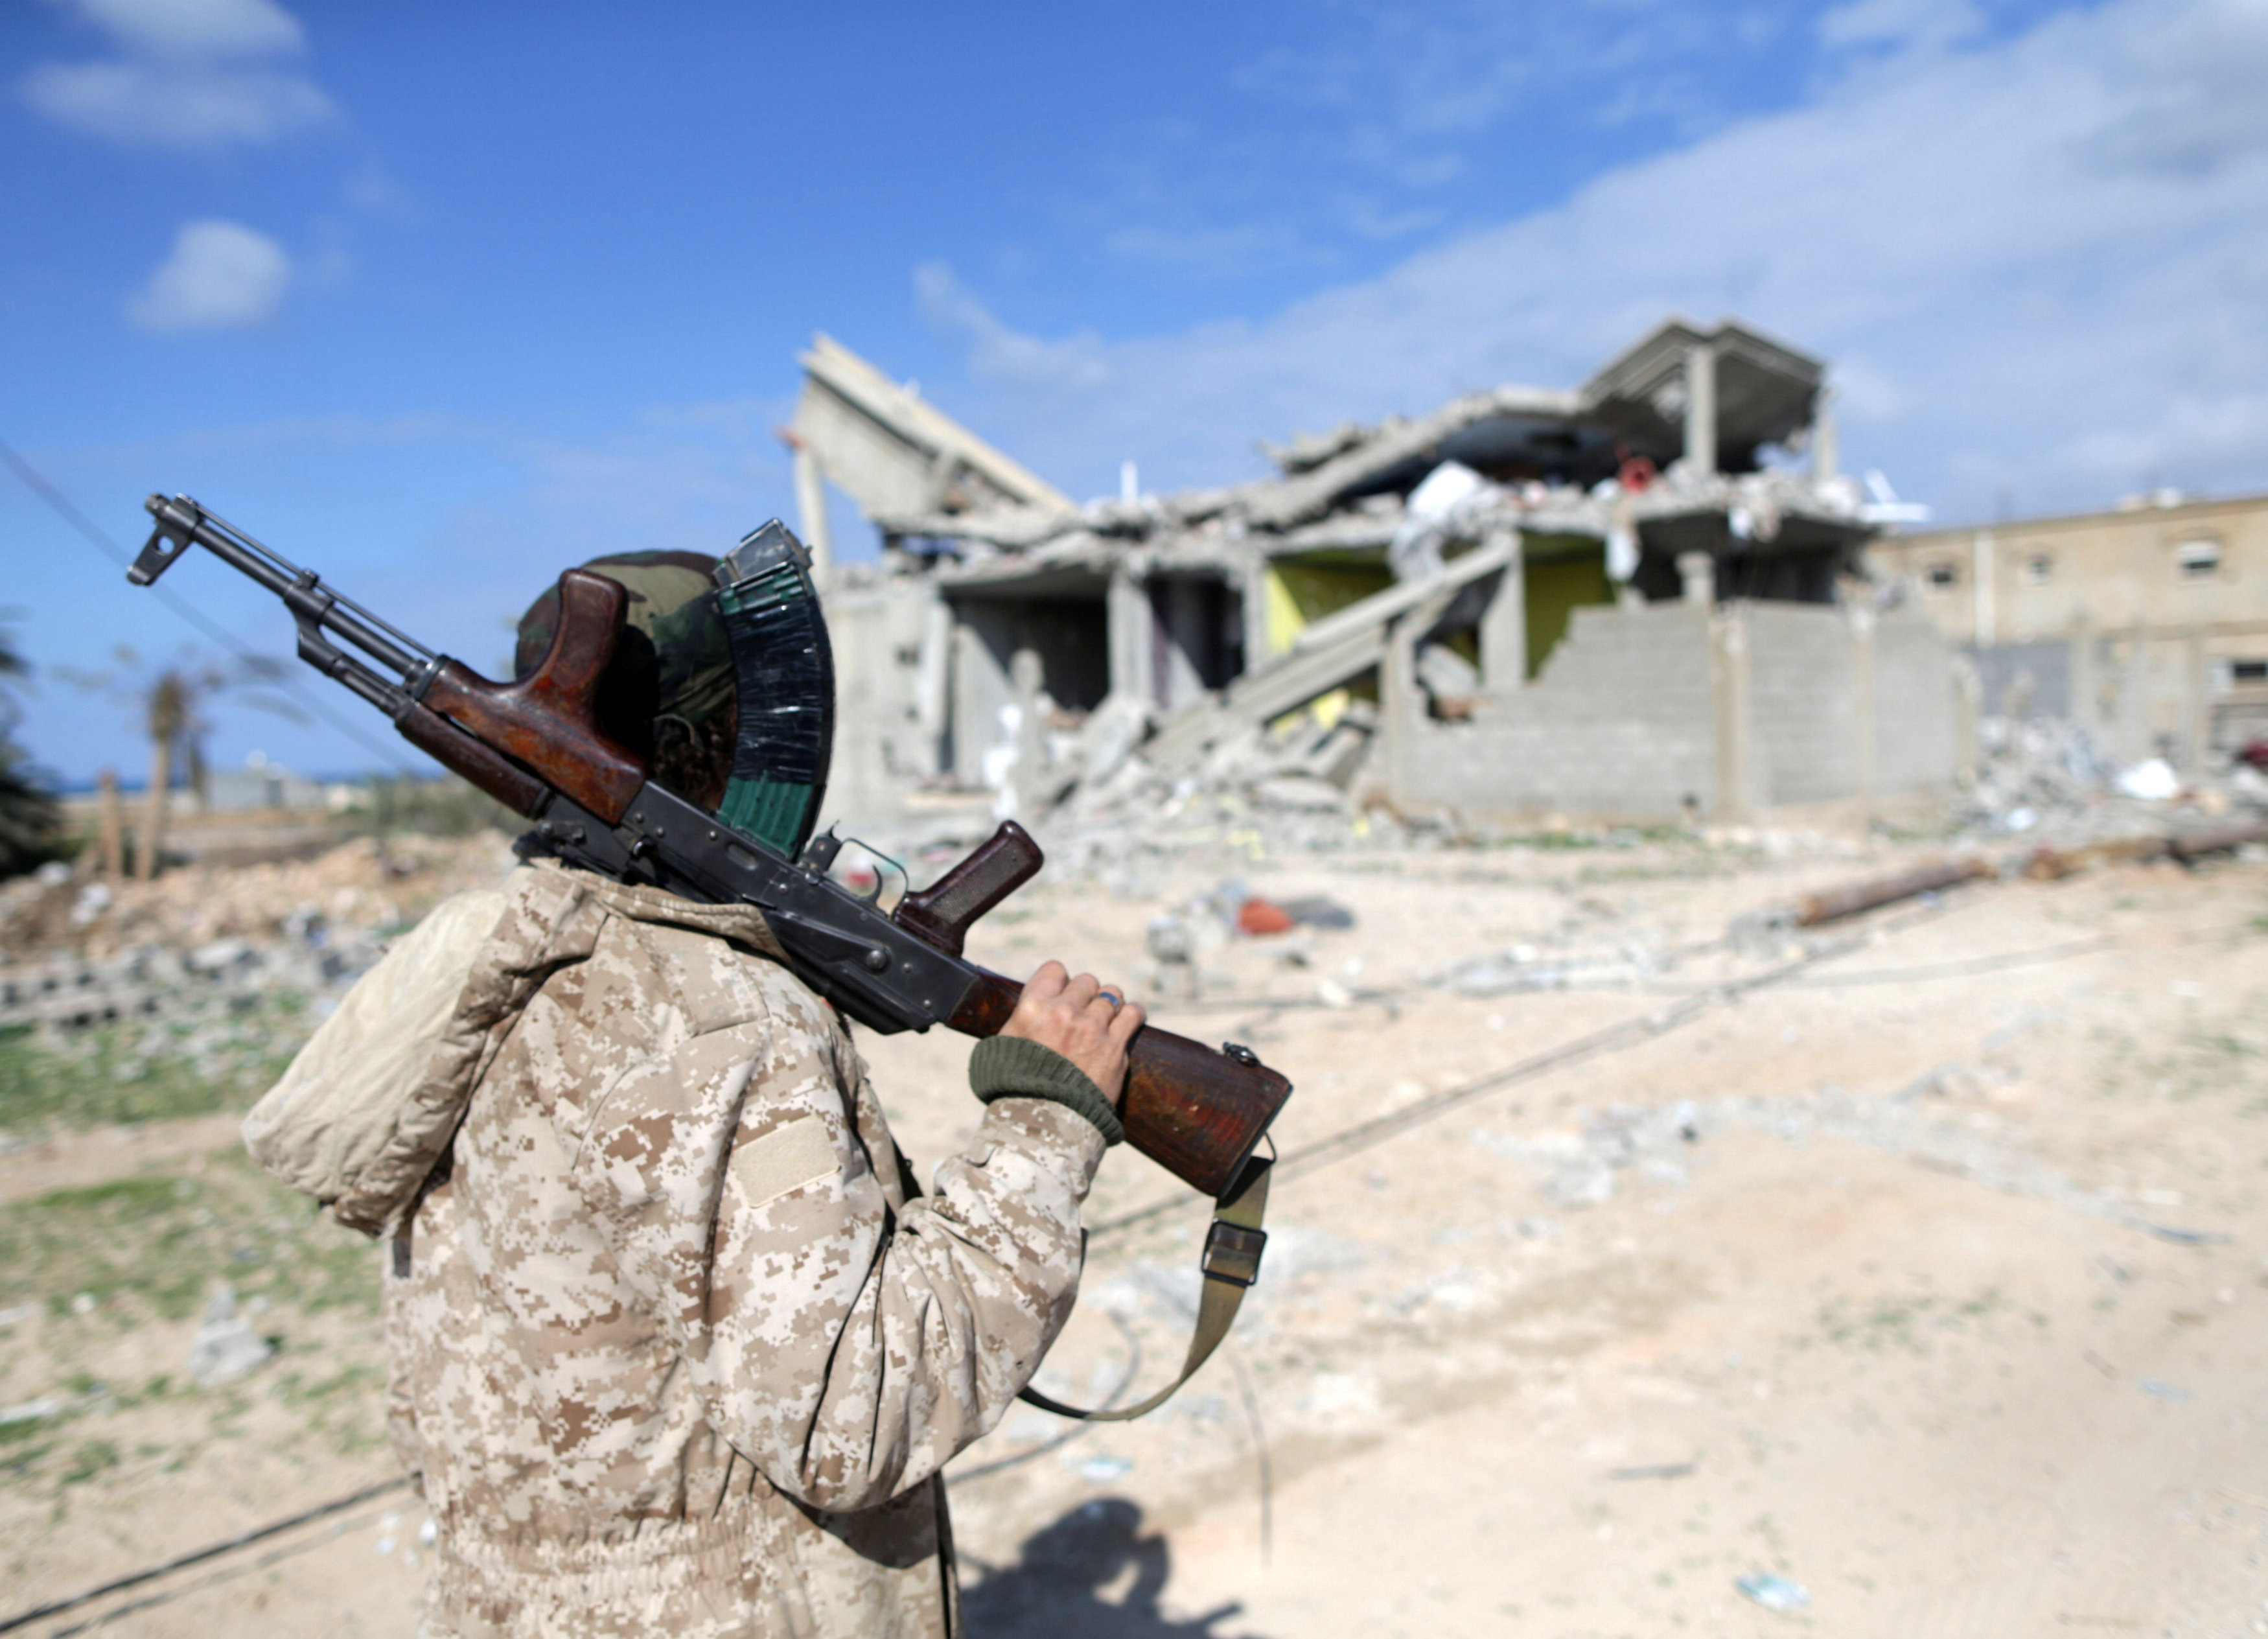  أحد أفراد القوات الليبية يقف أمام منزل مدمر